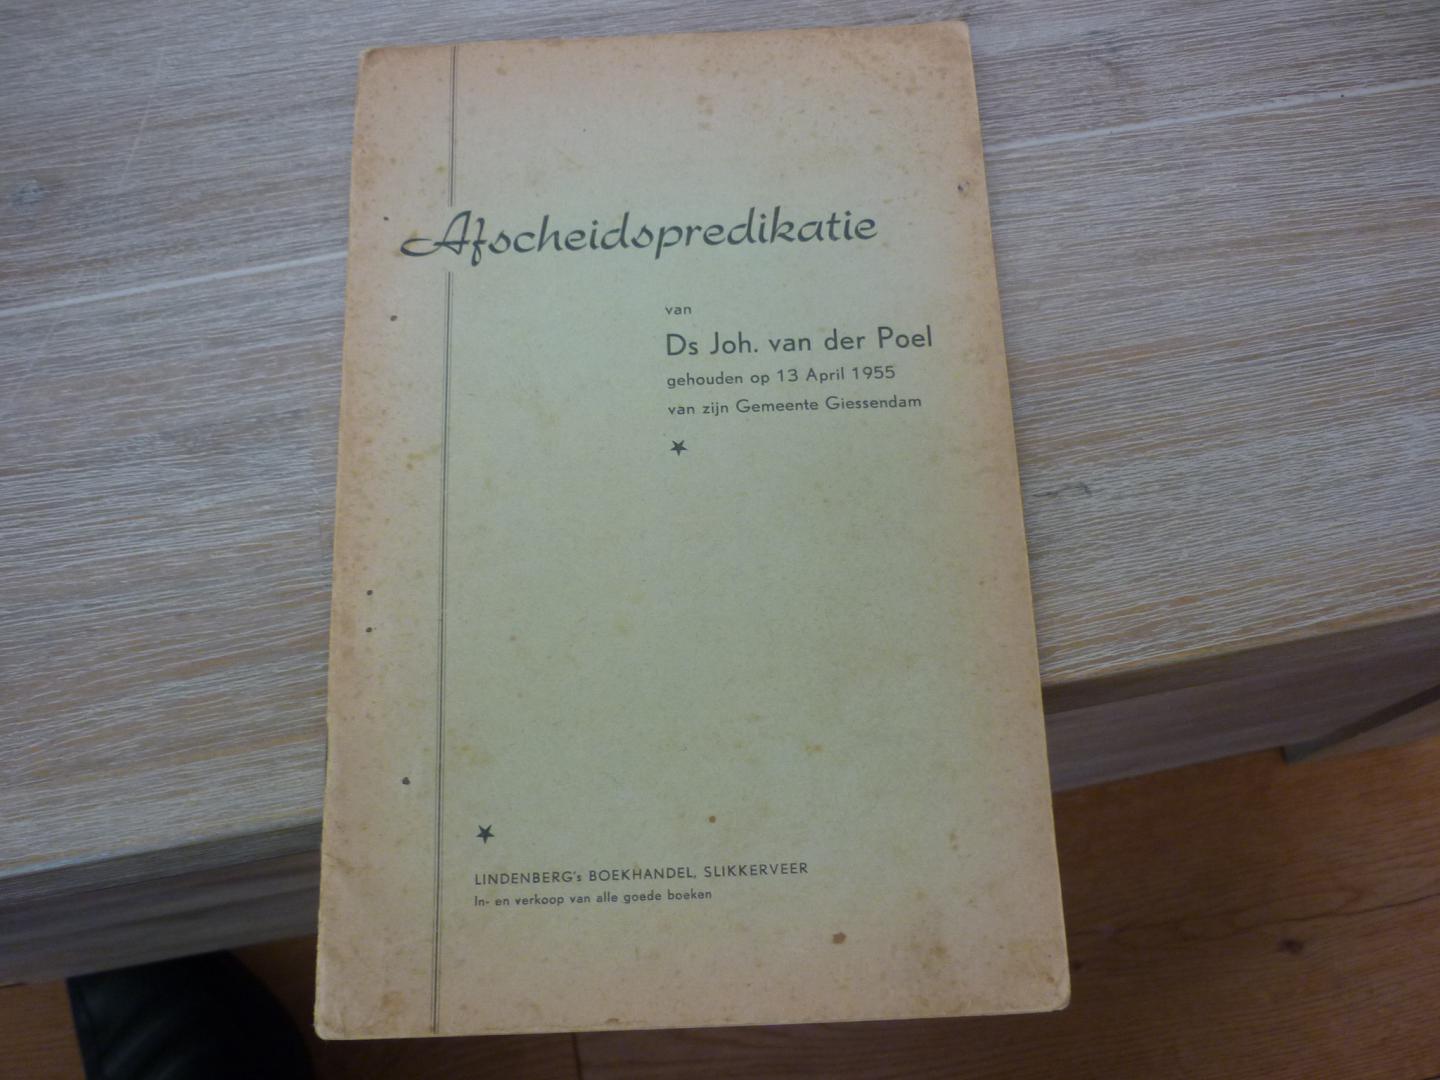 Poel, Ds. Joh.van der - Afscheidspredikatie van Ds. Joh. van der Poel - Gehouden op 13 April 1955 van zijn Gemeente Giessendam